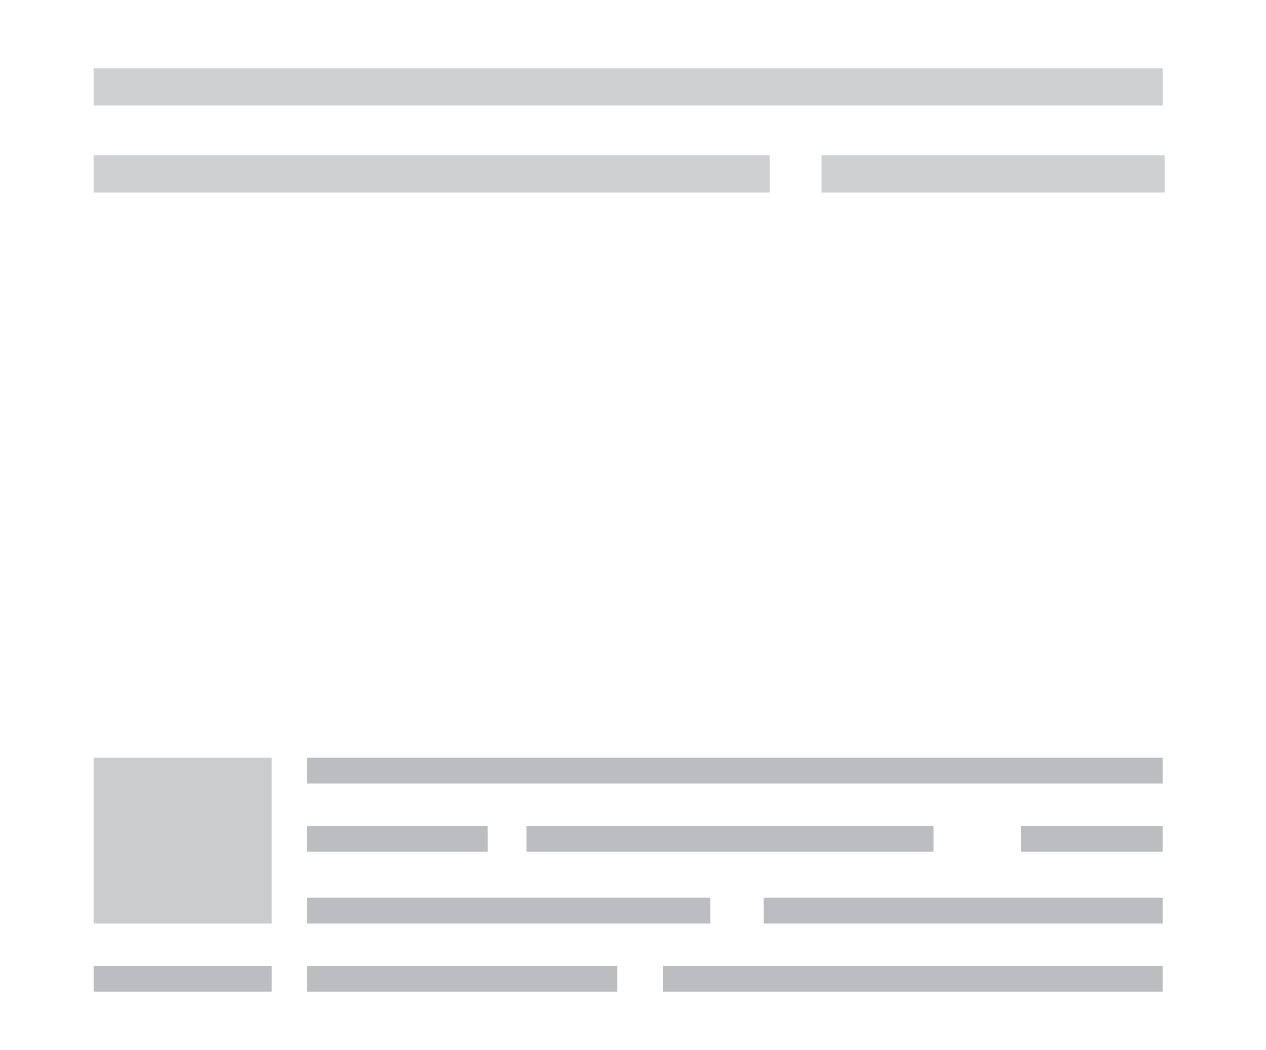 Hellenic Institute of Constructive Journalism